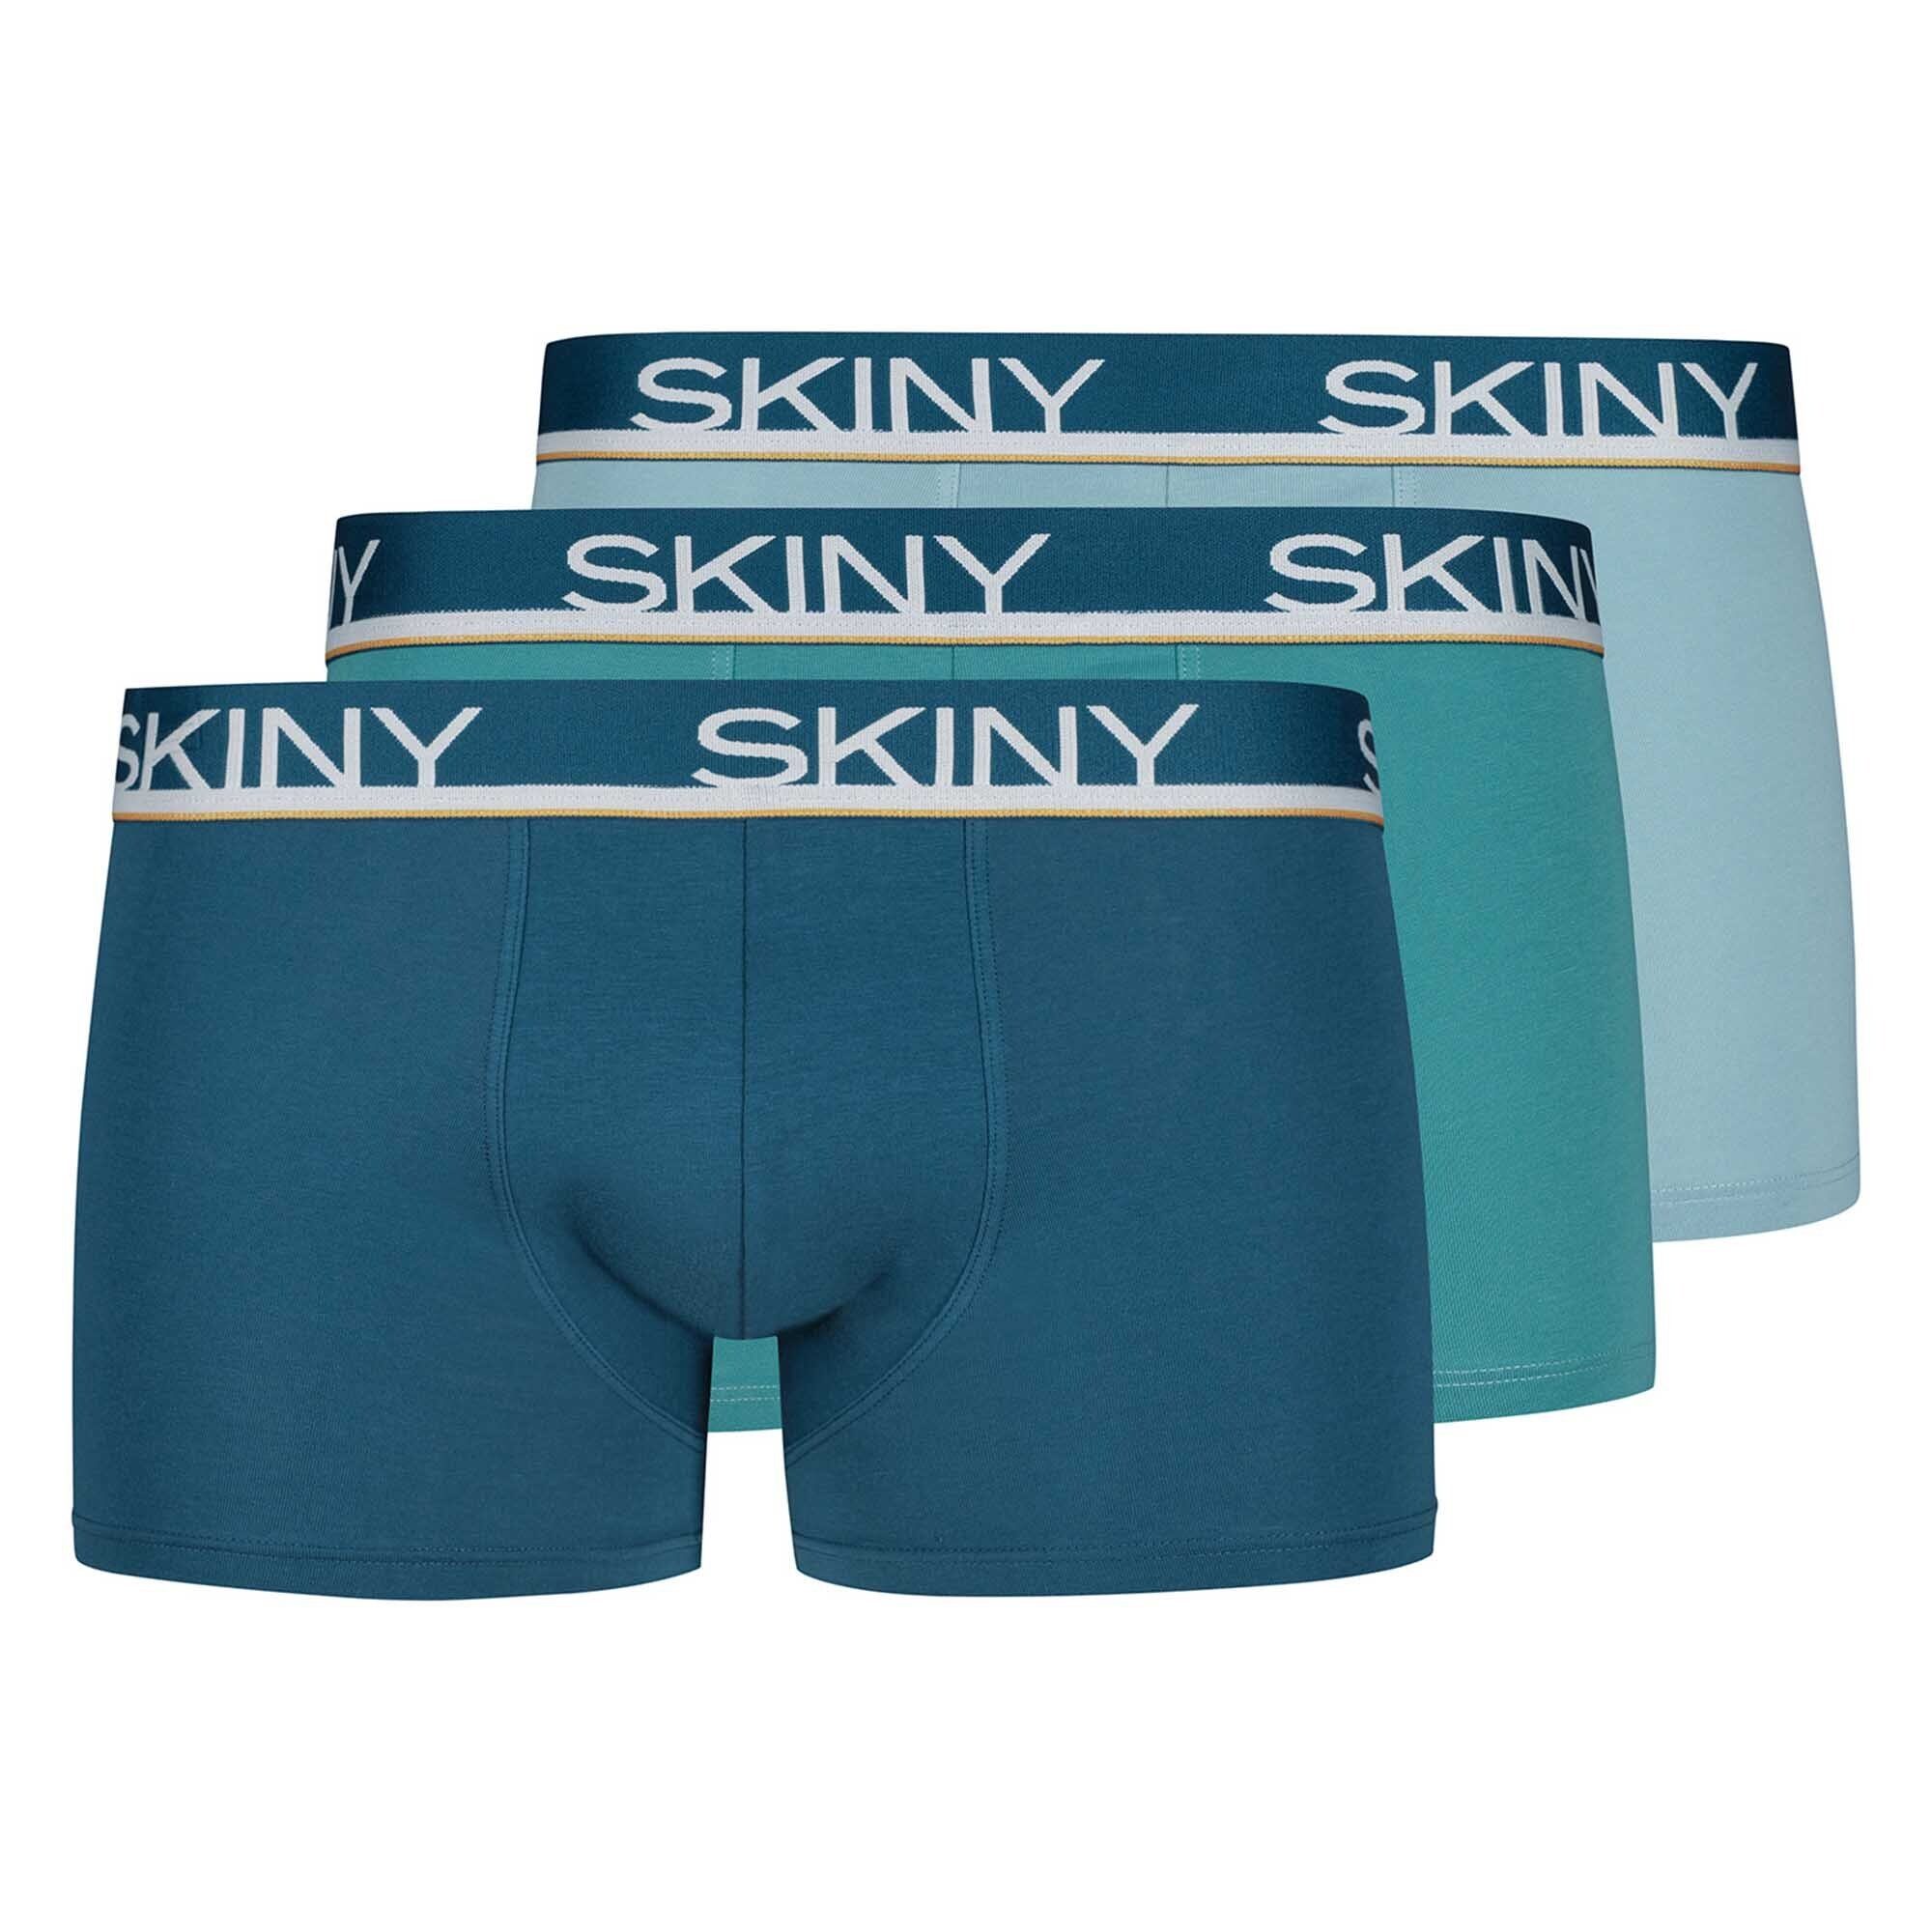 Blau/Türkis/Hellblau 3er Boxer Boxer Shorts Herren Pack Skiny Trunks, - Pants